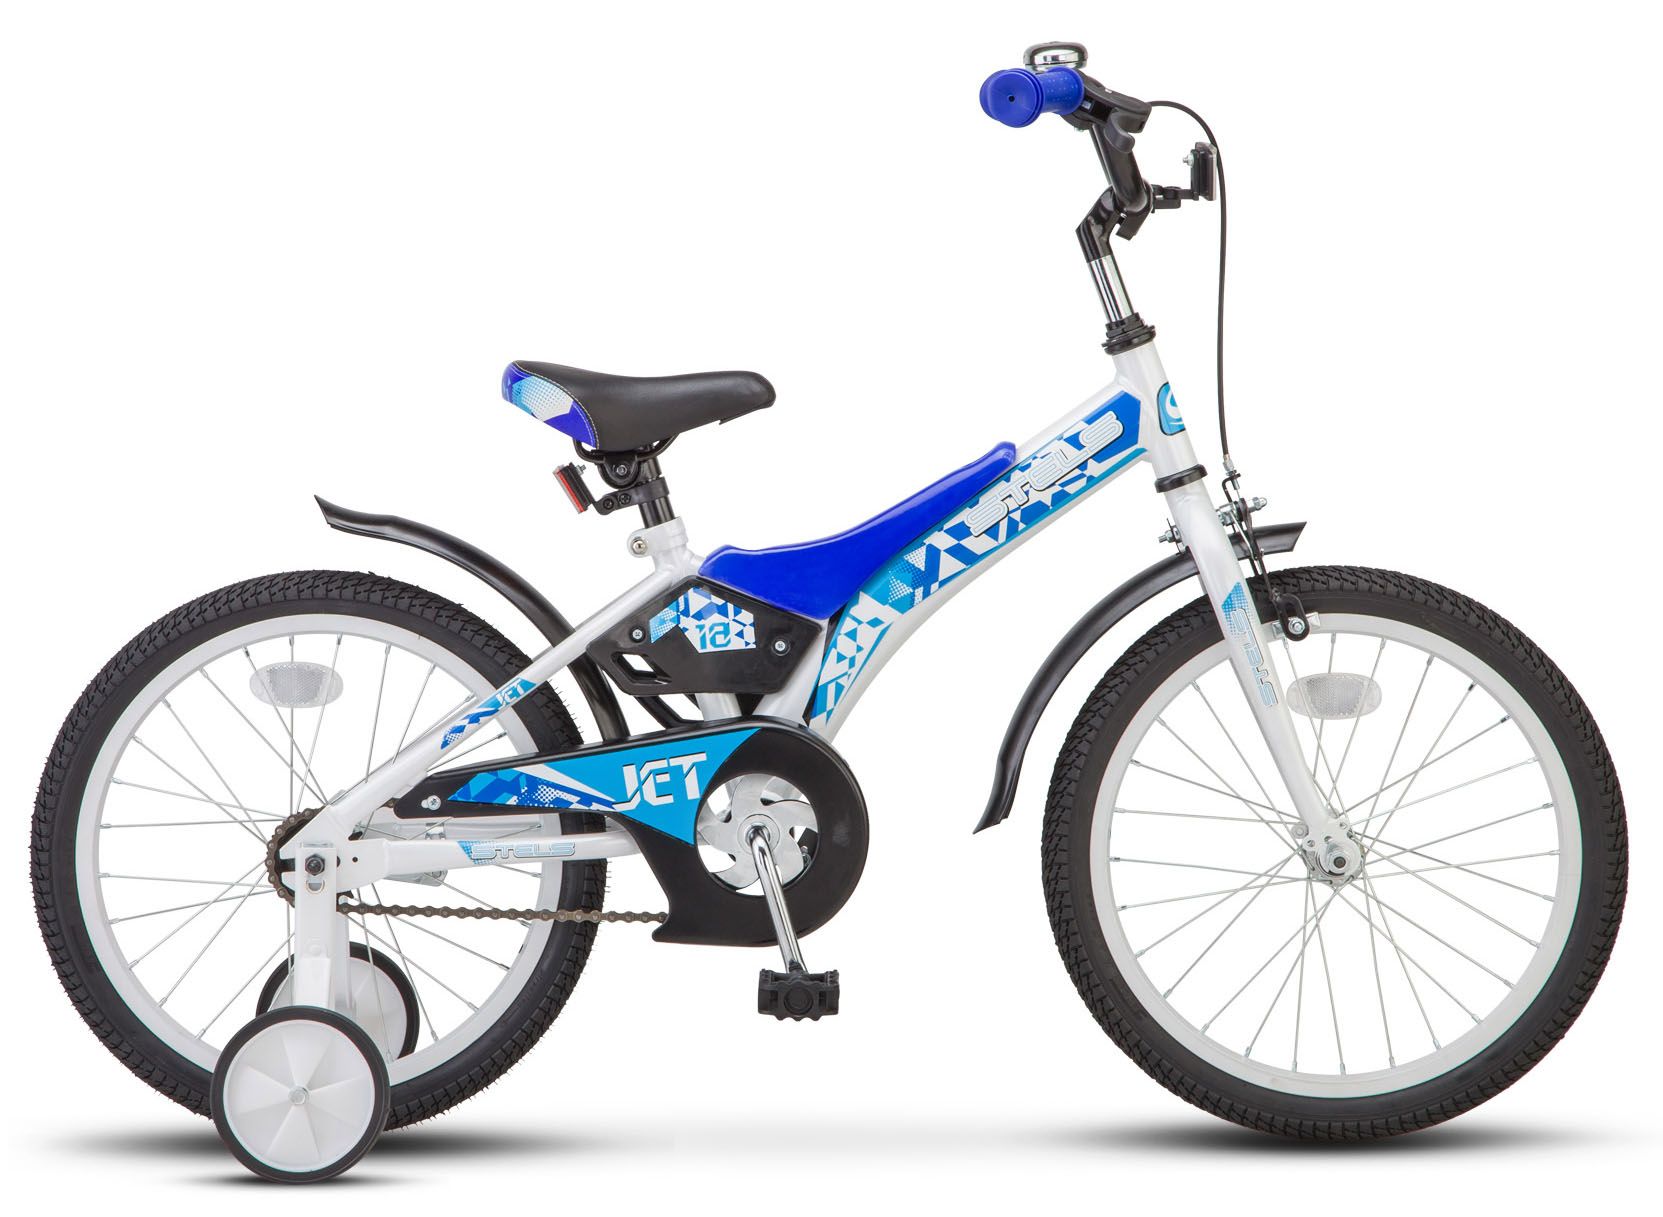  Отзывы о Детском велосипеде Stels Jet 18 (Z010) 2018